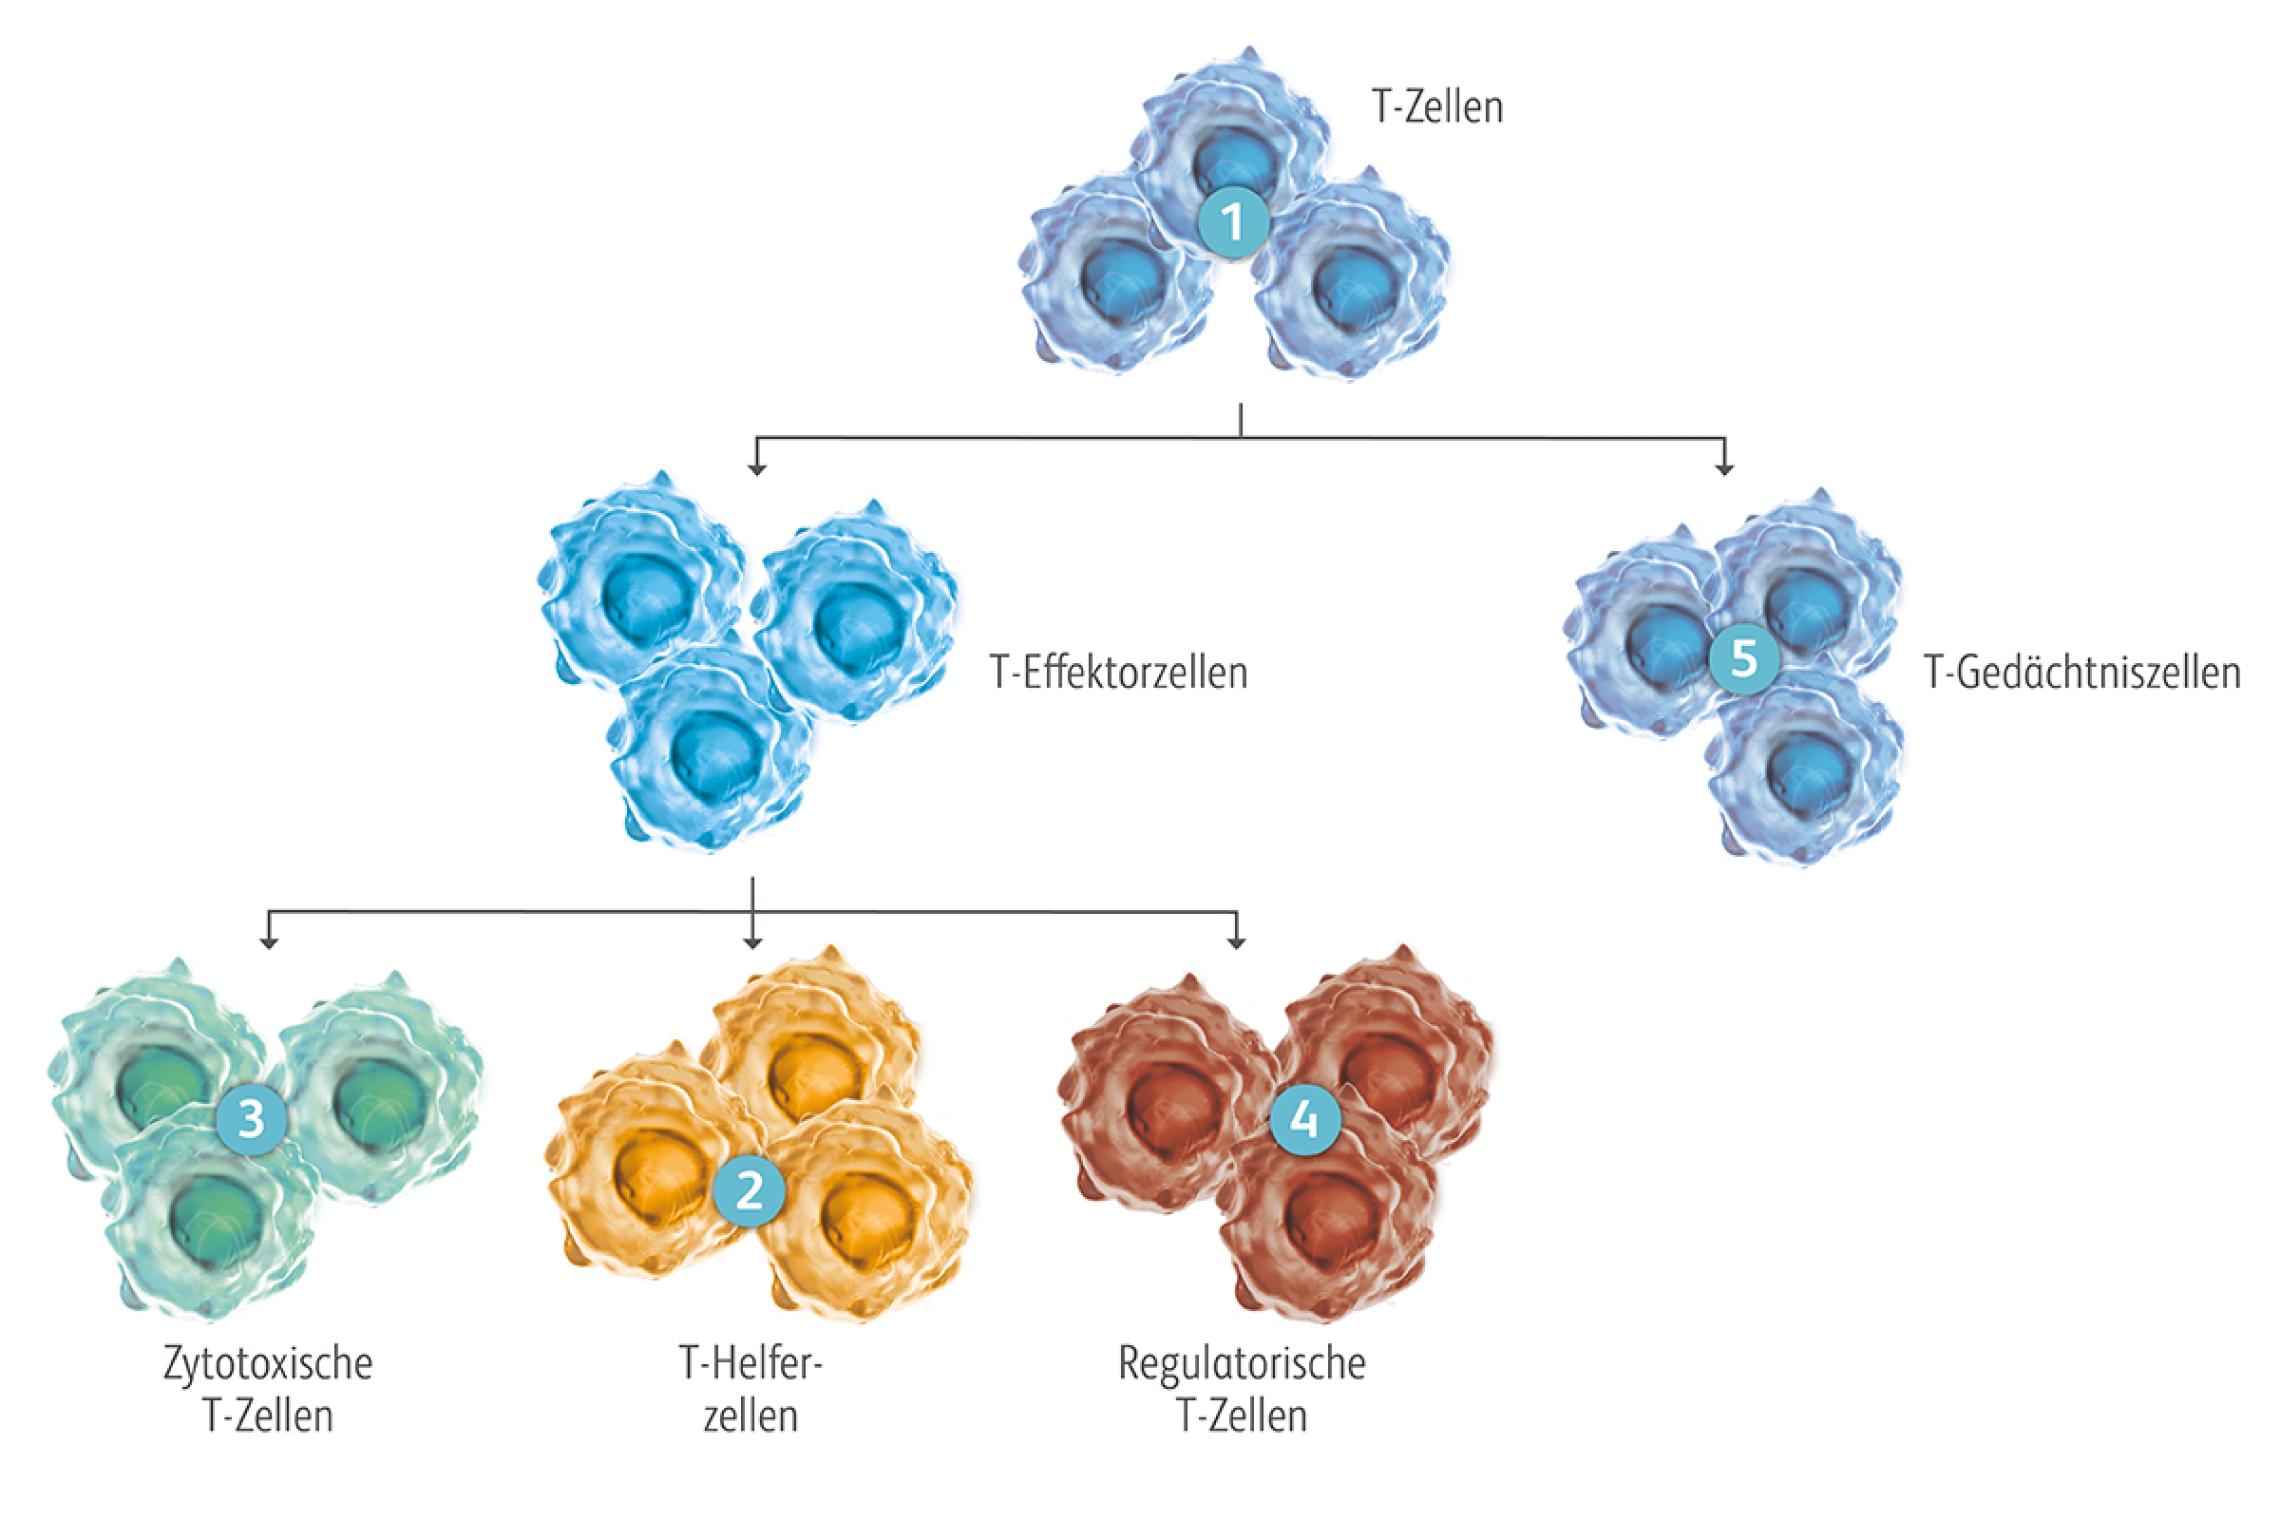 Nach ihrer Aktivierung differenziert sich ein Teil der T-Zellen in T-Effektorzellen, die während der Immunantwort als T-Helferzellen, zytotoxische und regulatorische T-Zellen unterstützende, abtötende und regulatorische Funktionen übernehmen. Ein Teil differenziert sich zu den langlebigen T-Gedächtniszellen, die als immunologisches Gedächtnis bei erneutem Antigenkontakt eine rasche Immunantwort einleiten.